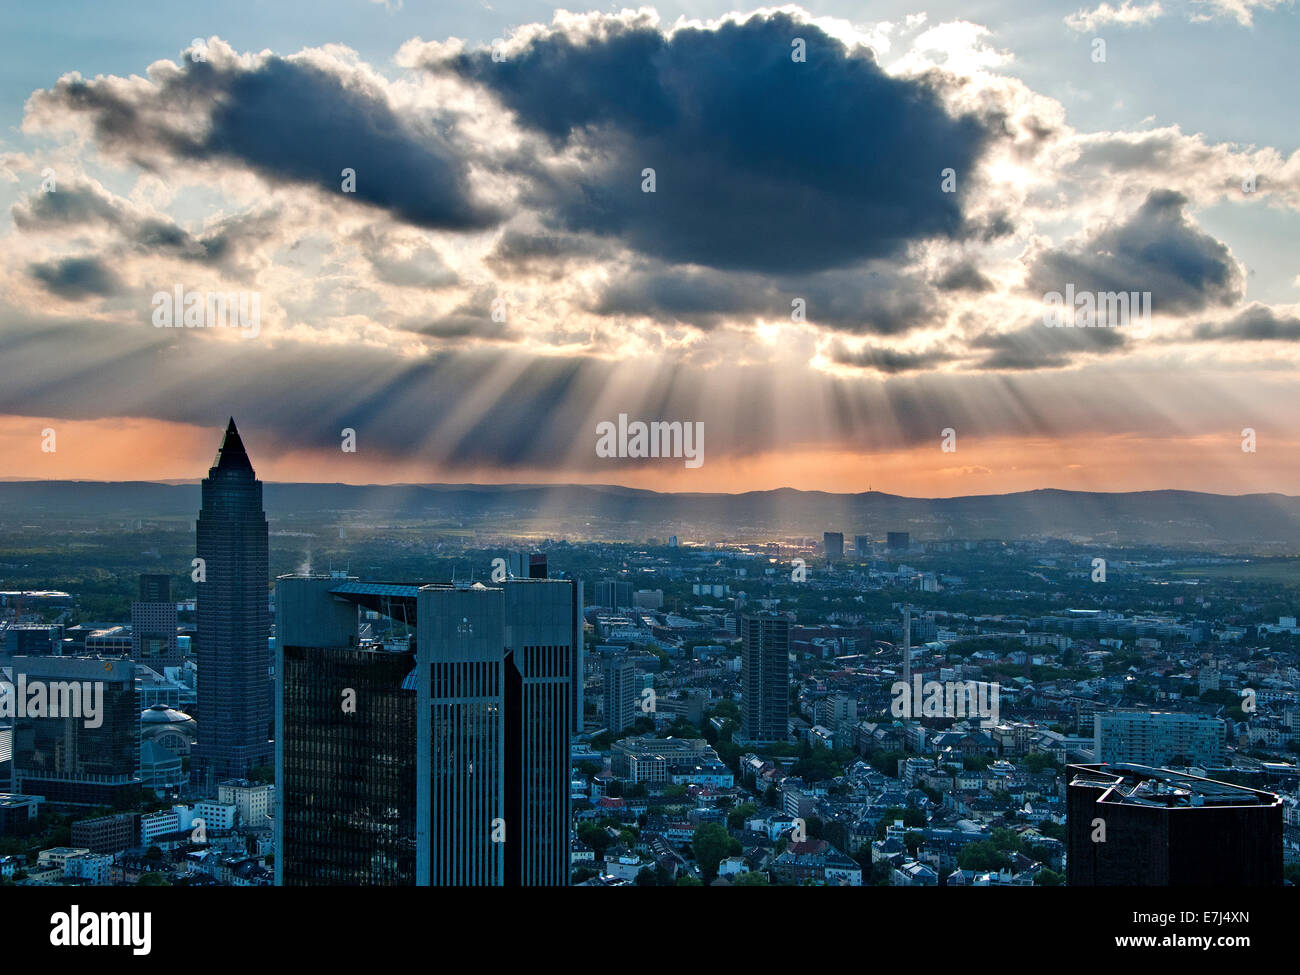 Spektakuläre Aussicht von Frankfurt aus dem Main Tower, Frankfurt am Main, Deutschland, Europa Stockfoto